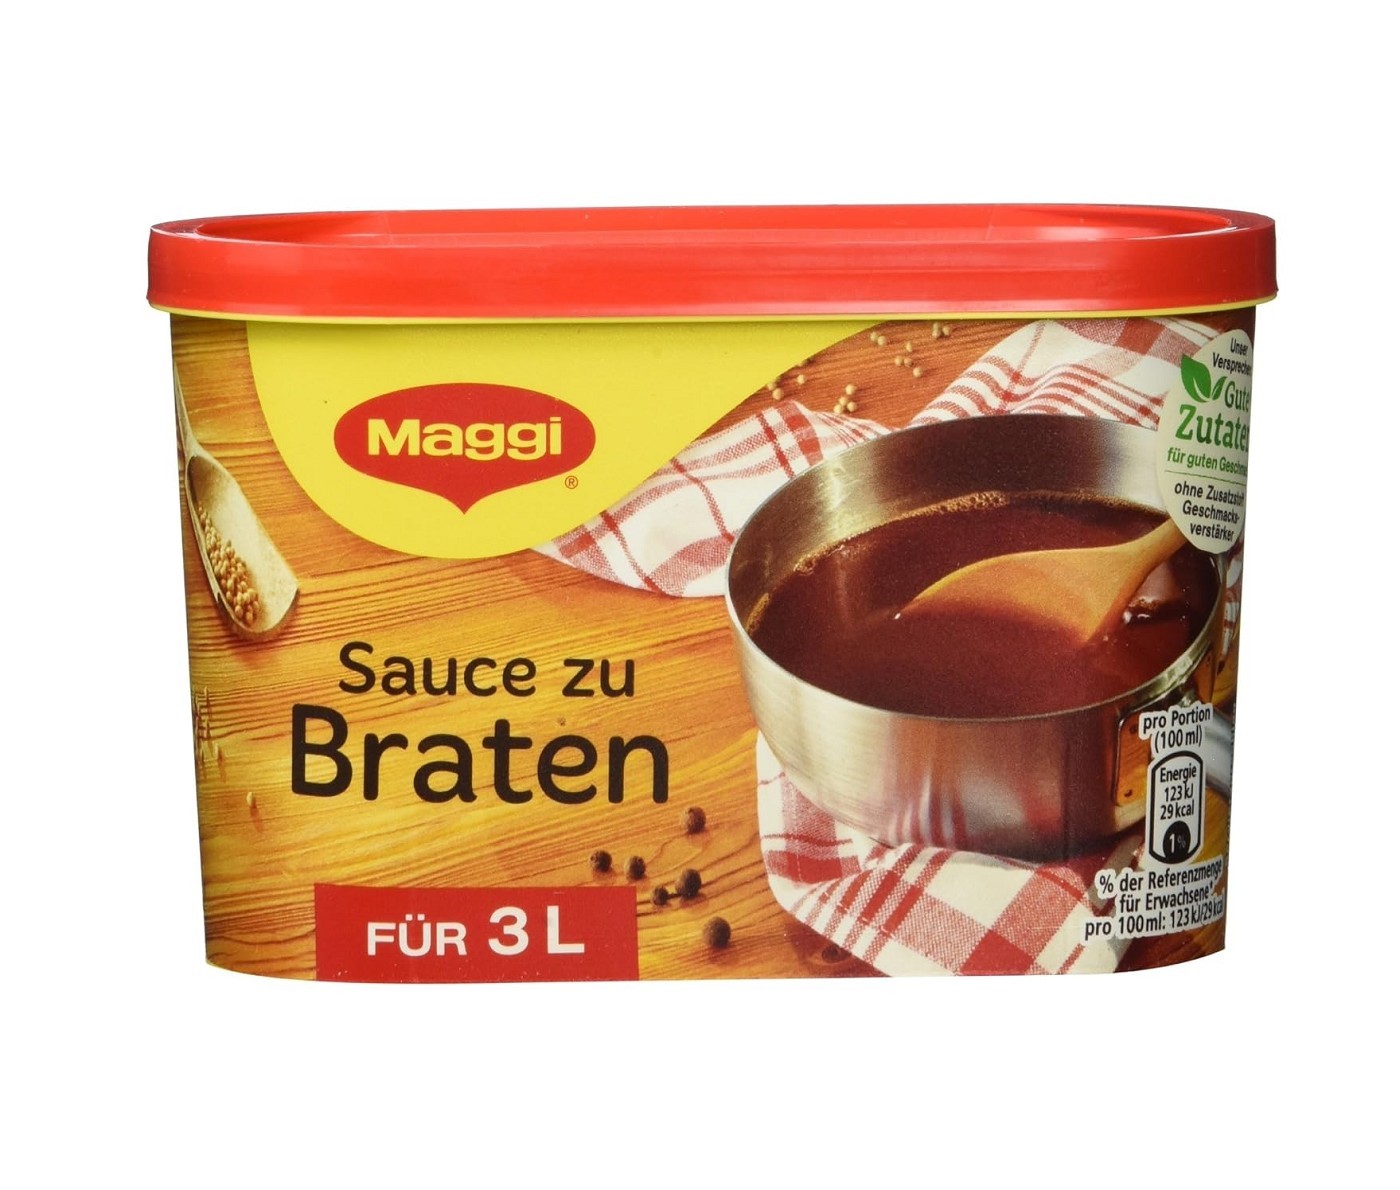 Maggi Sauce zu Braten ergibt 3 Liter